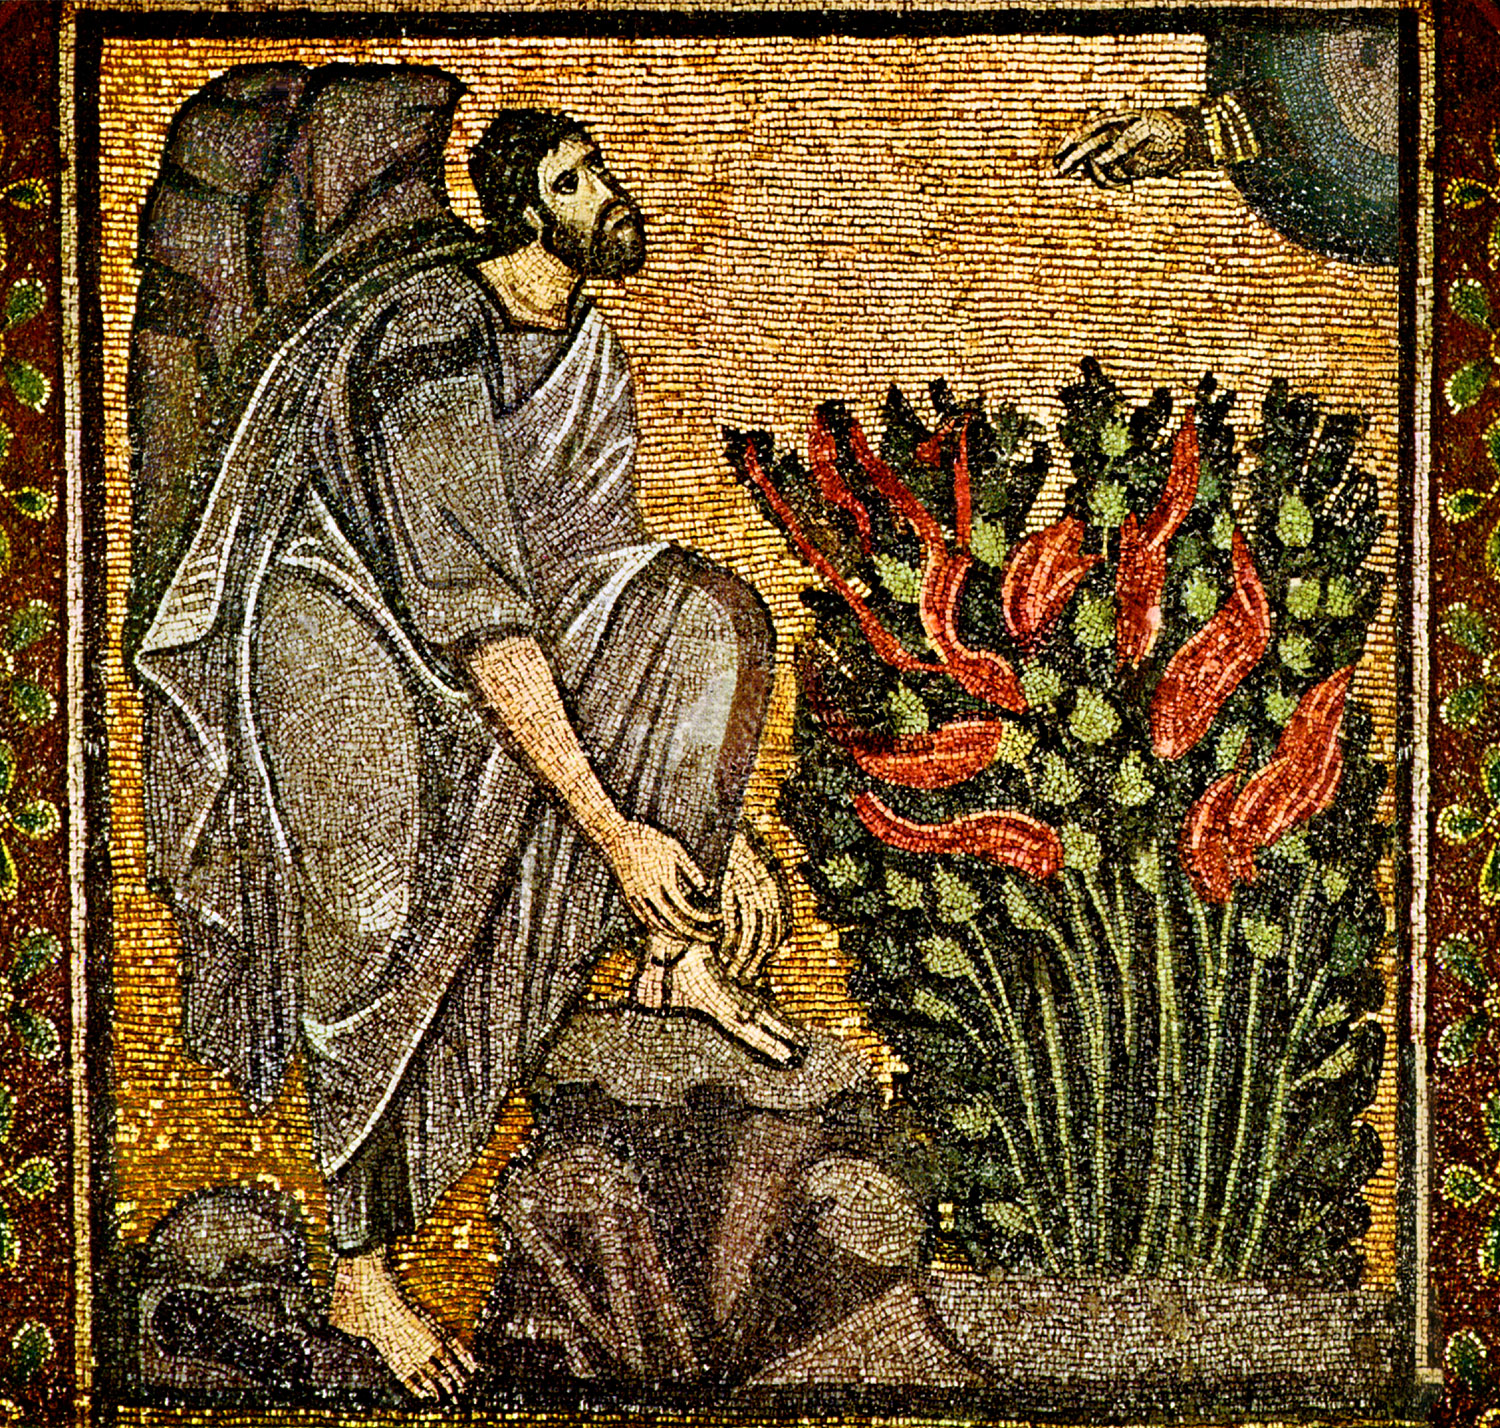 Моисей перед Неопалимой Купиной. Византийская мозаика из монастыря святой Екатерины на Синае. 6 век